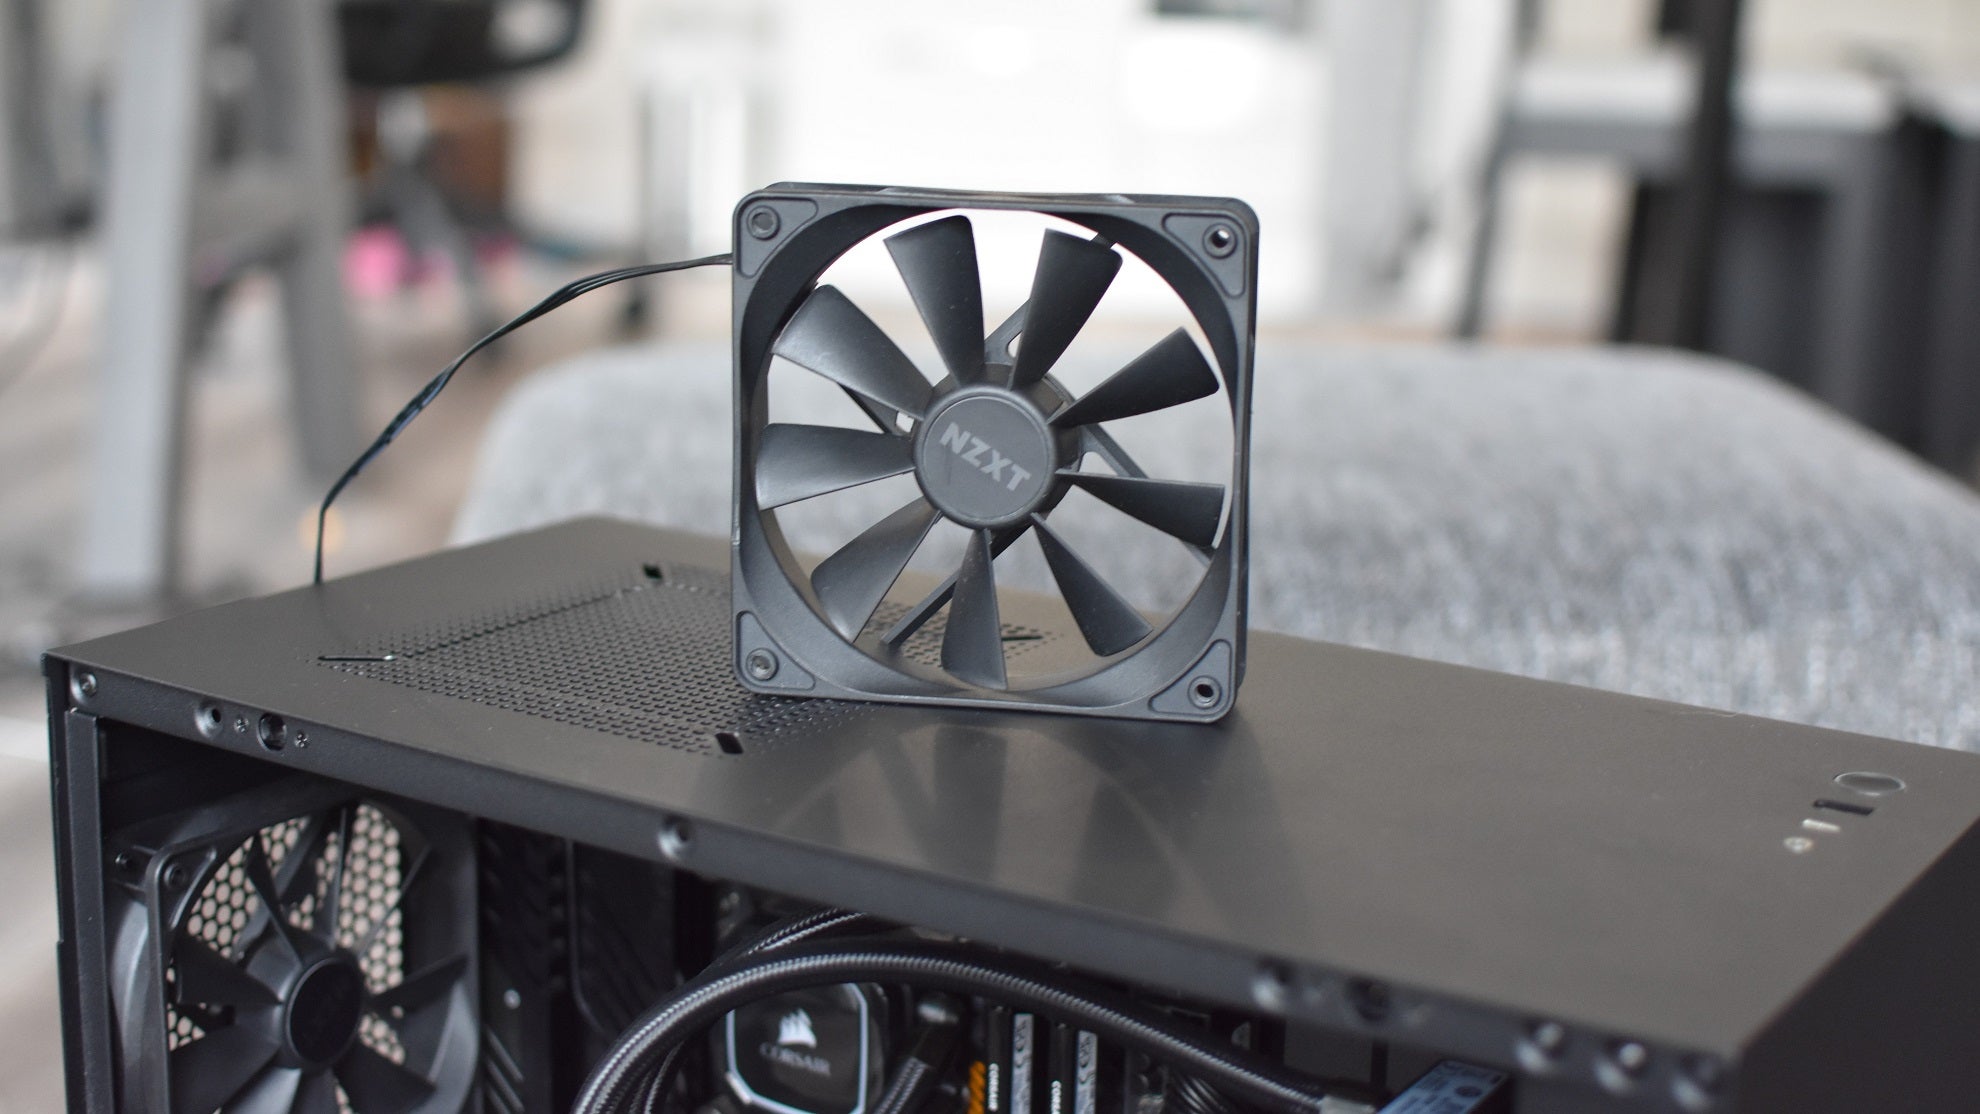 An NZXT case fan stood on top of an open PC case.